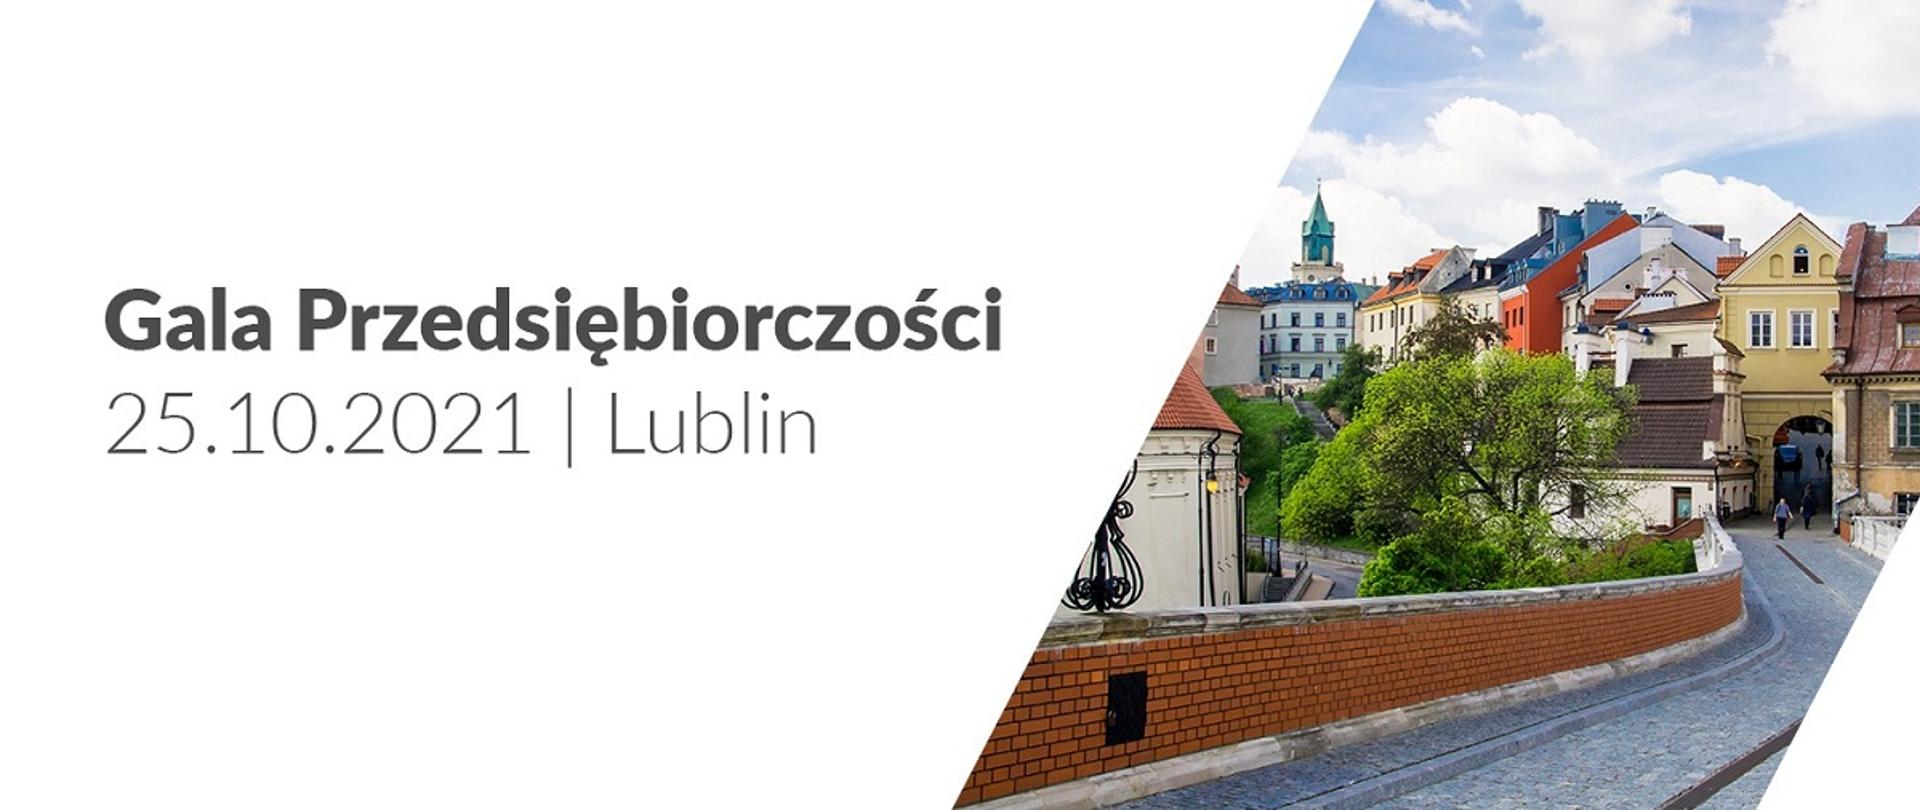 Gala Przedsiębiorczości w Lublinie, po prawej stronie fotografia przedstawiająca Stare Miasto w Lublinie